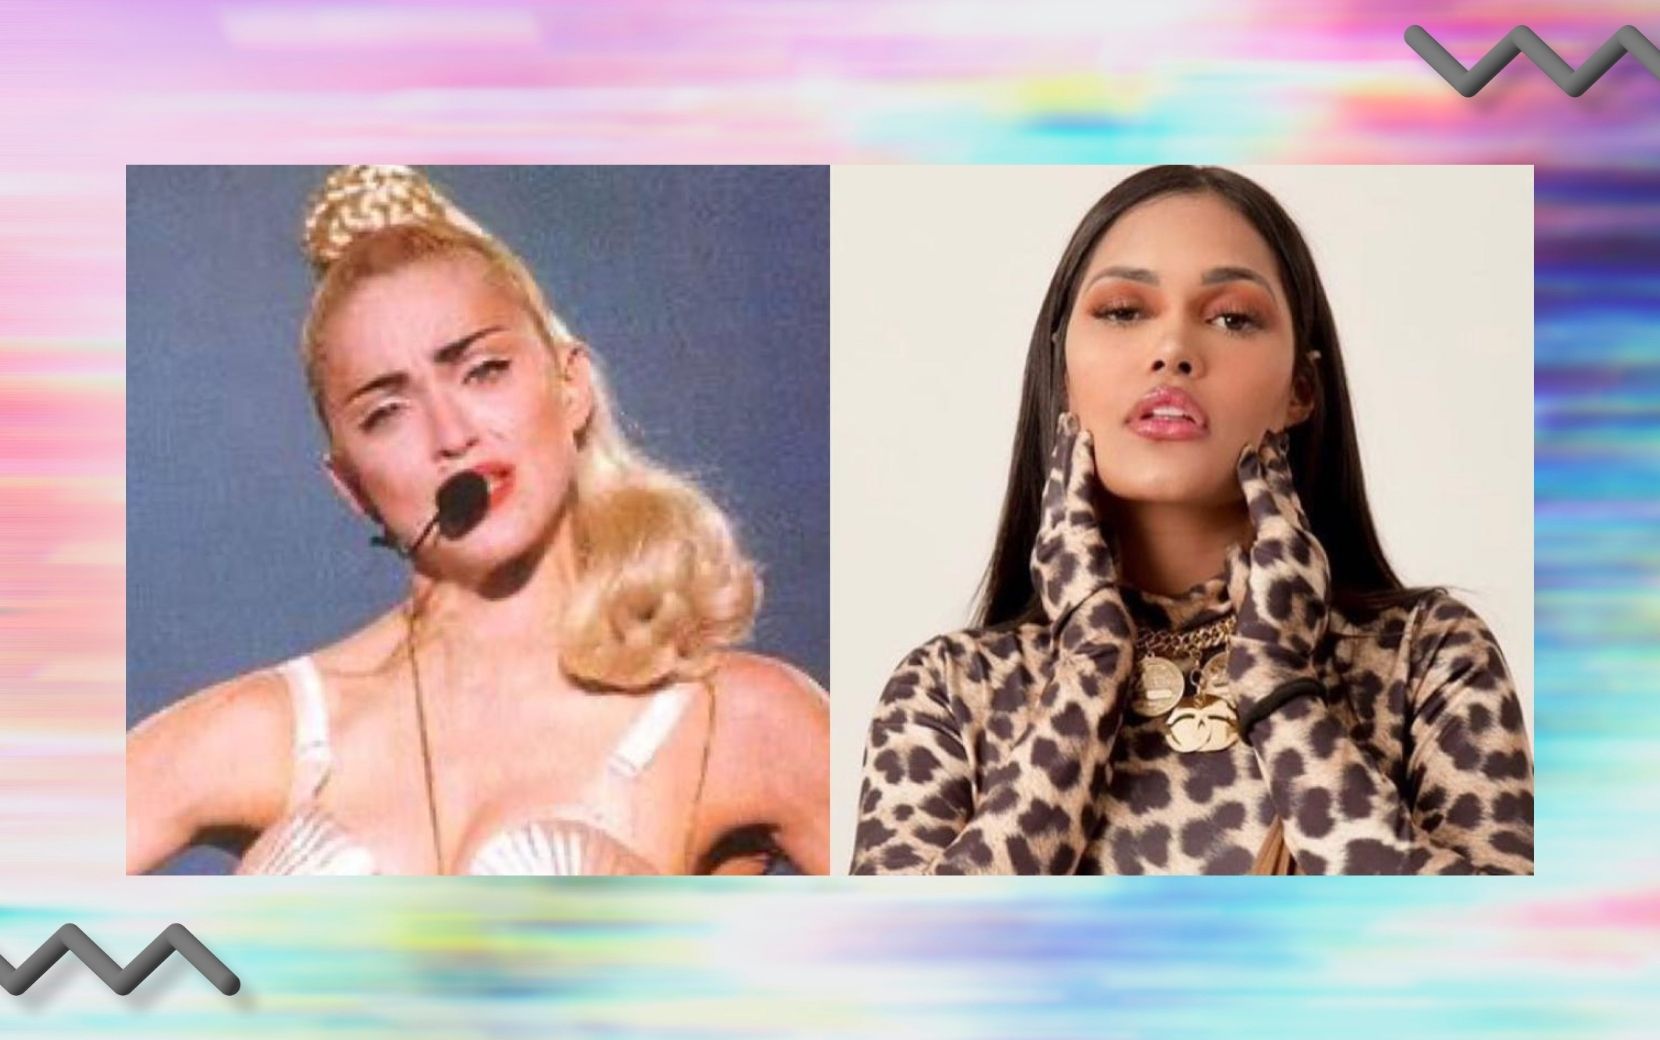 Empoderada, sim! Flay sugere discussão em vídeo inspirado no icônico sutiã-cone usado pela Madonna nos anos 90 - veja!